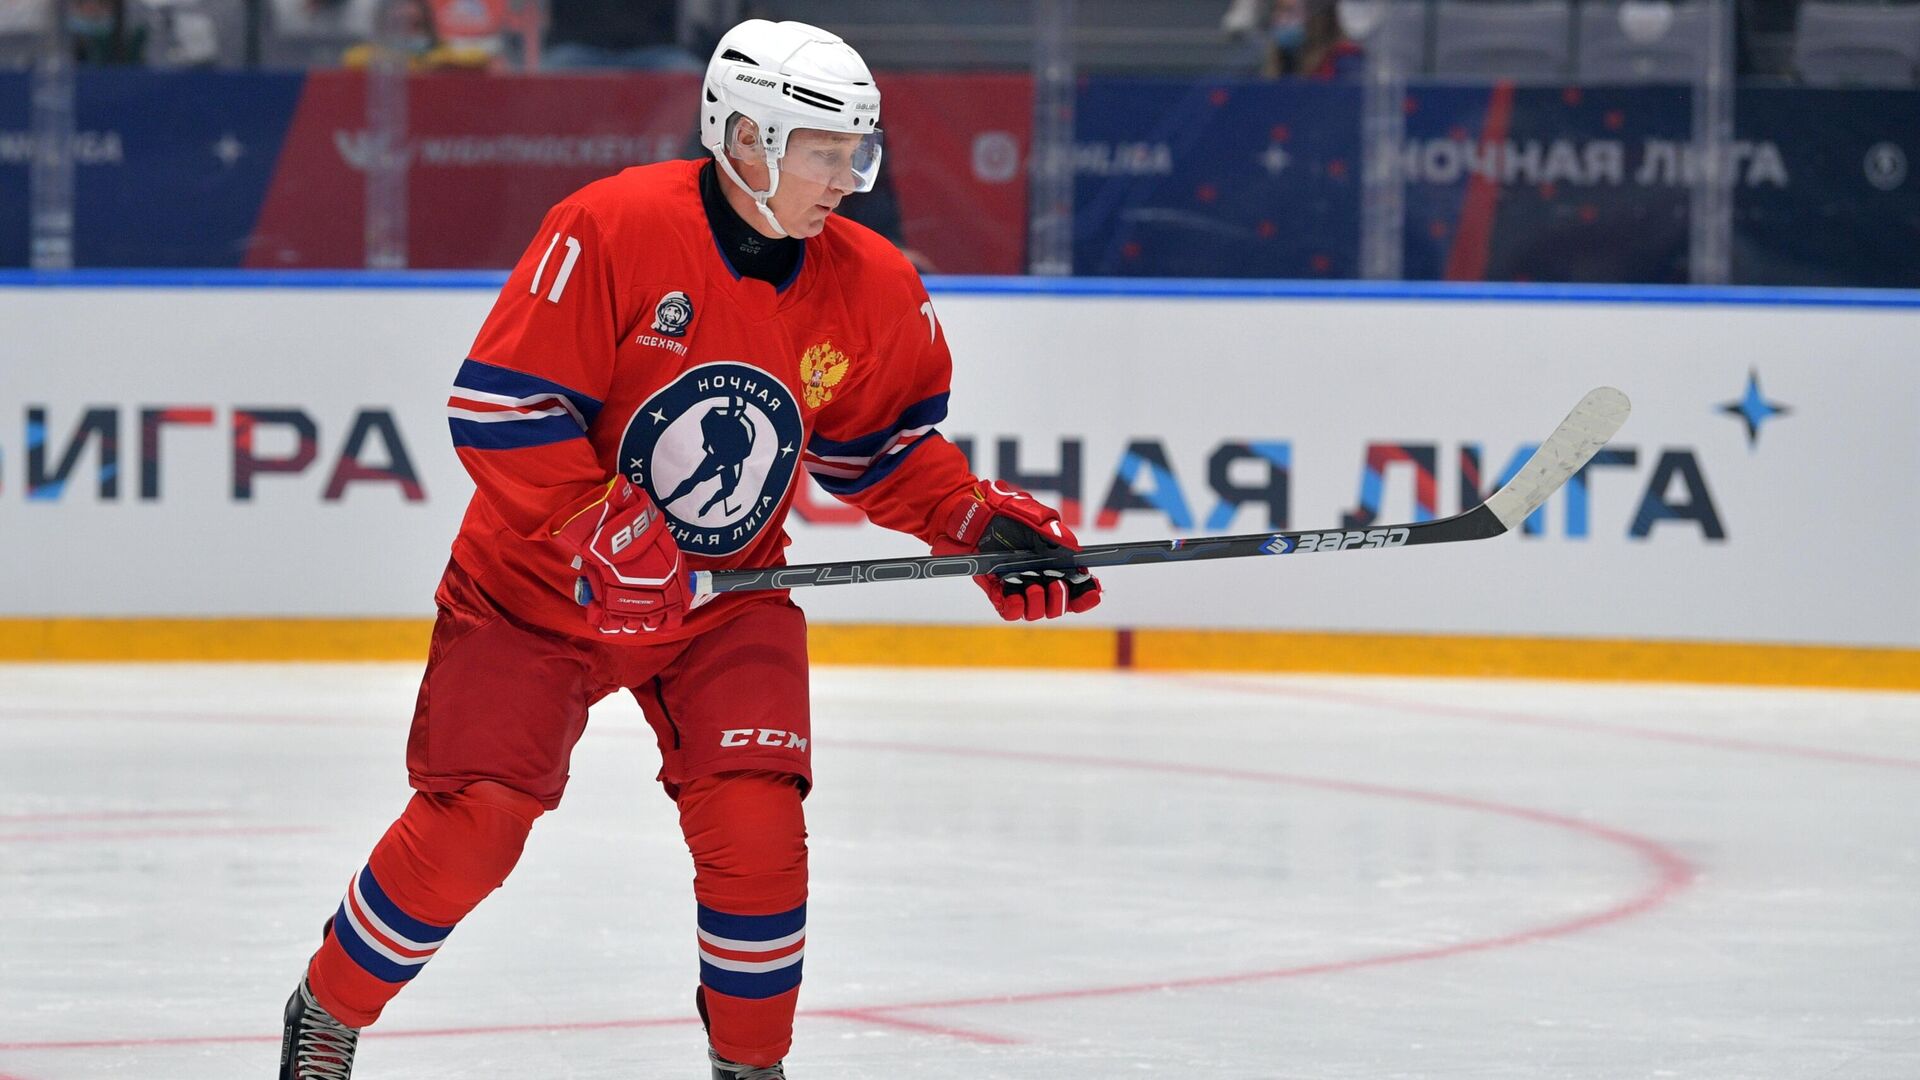 Сергачёв заявил, что Путину поддаются во время хоккейных матчей